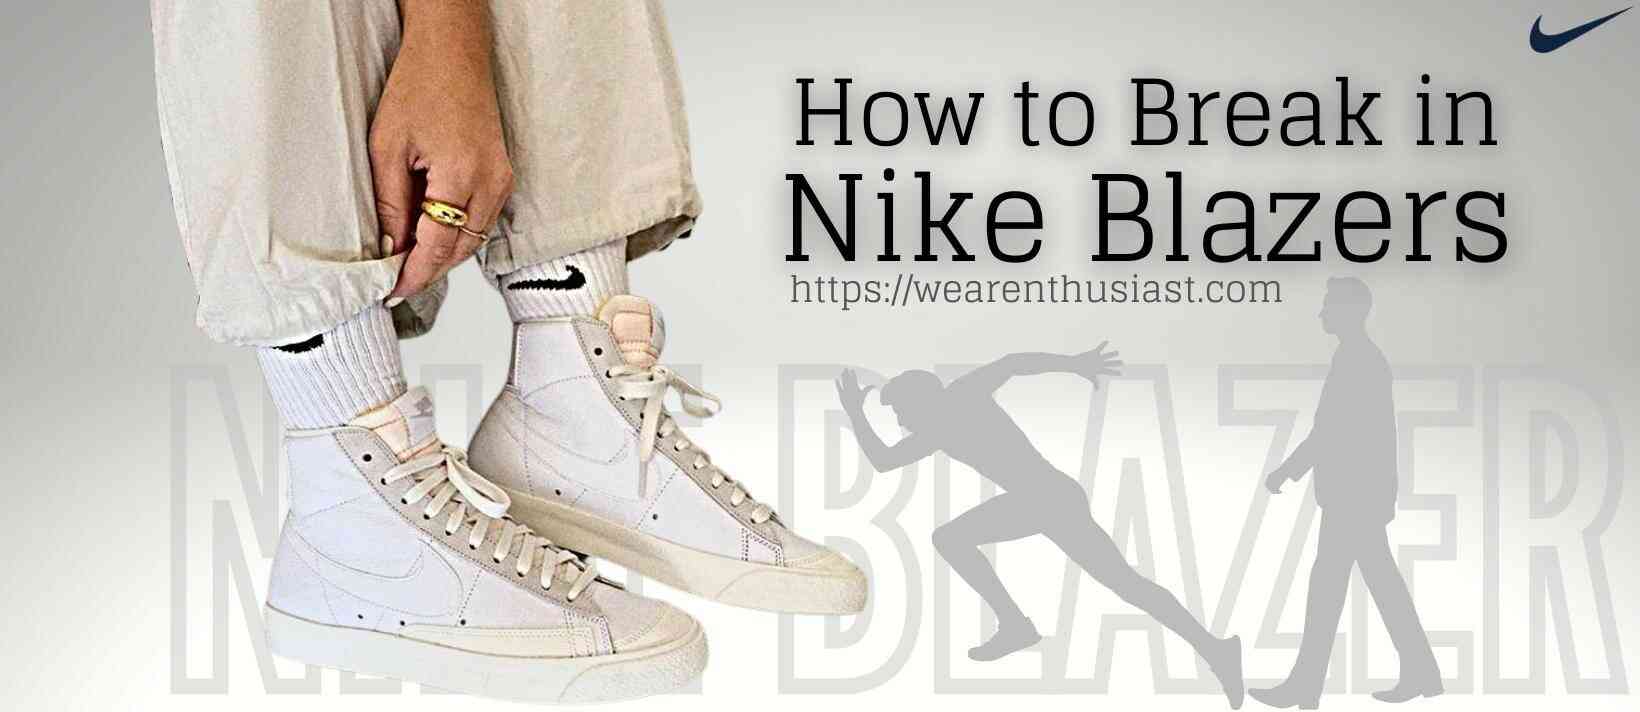 How to Break in Nike Blazers